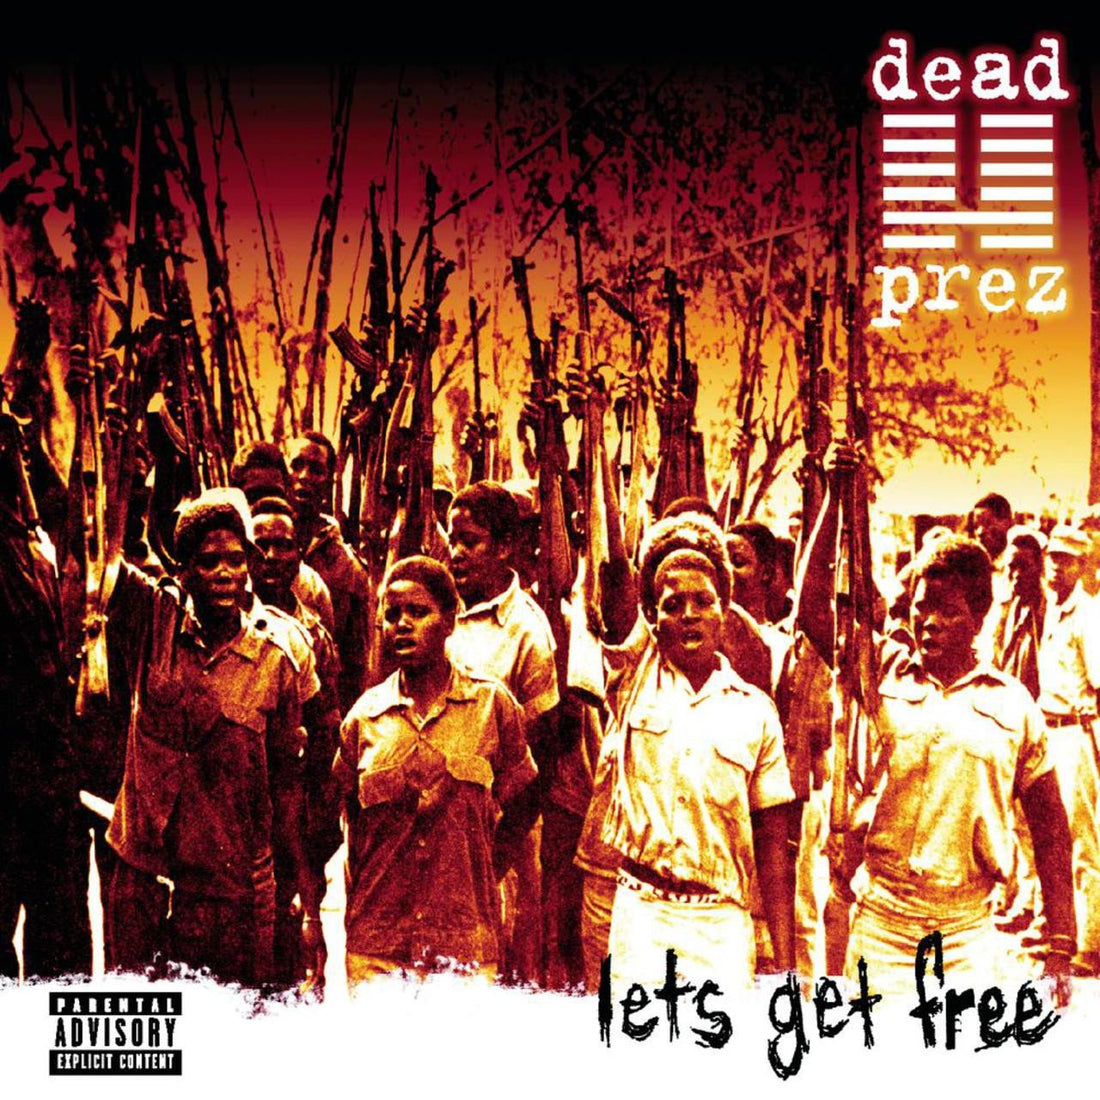 dead prez "Let's Get Free" 2xLP Vinyl